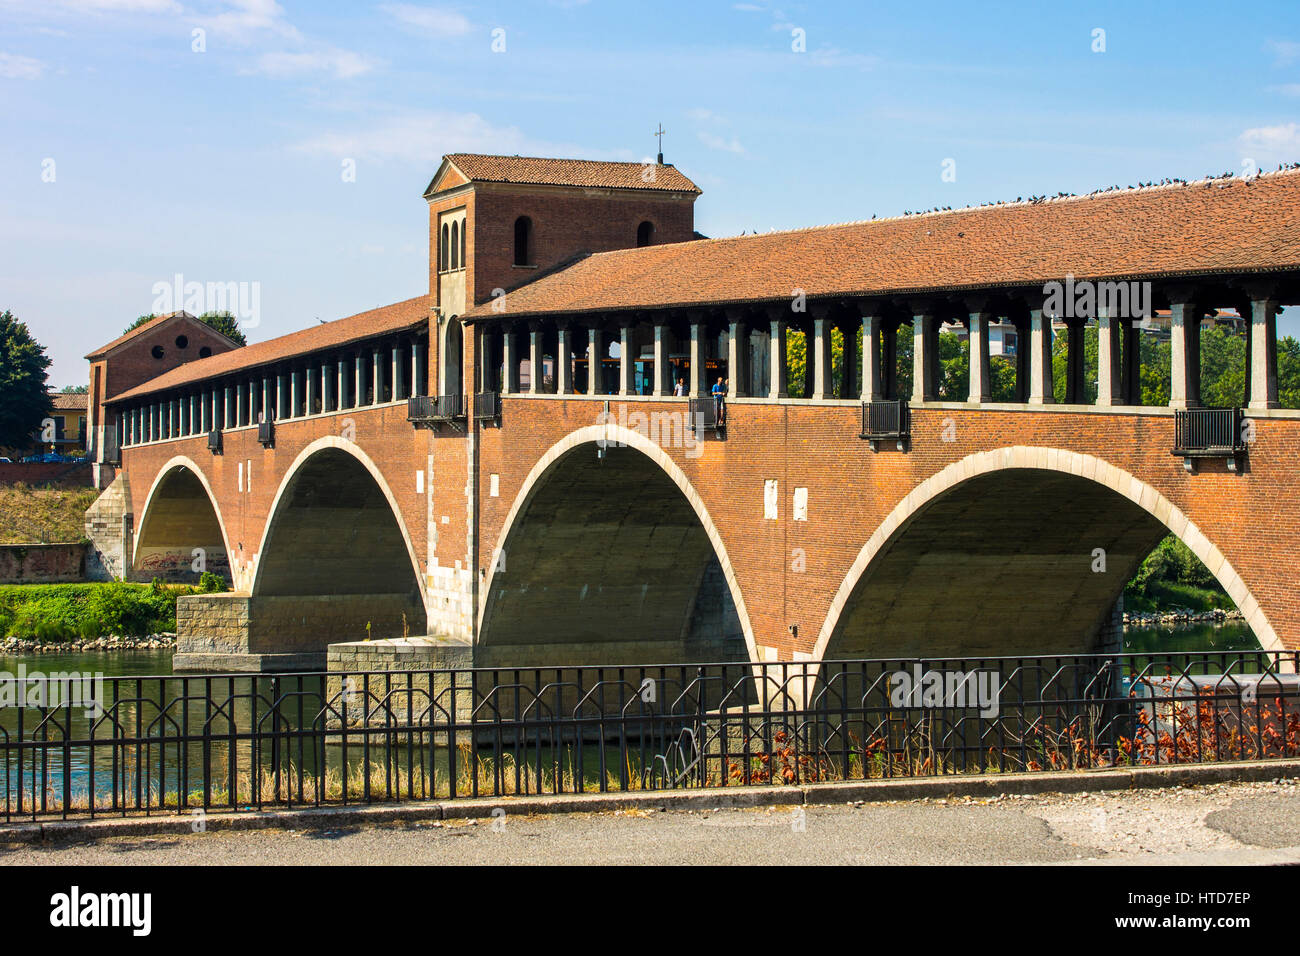 The Ponte Coperto (covered bridge), also known as the Ponte Vecchio (old bridge), a brick and stone arch bridge over the Ticino River in Pavia, Italy. Stock Photo